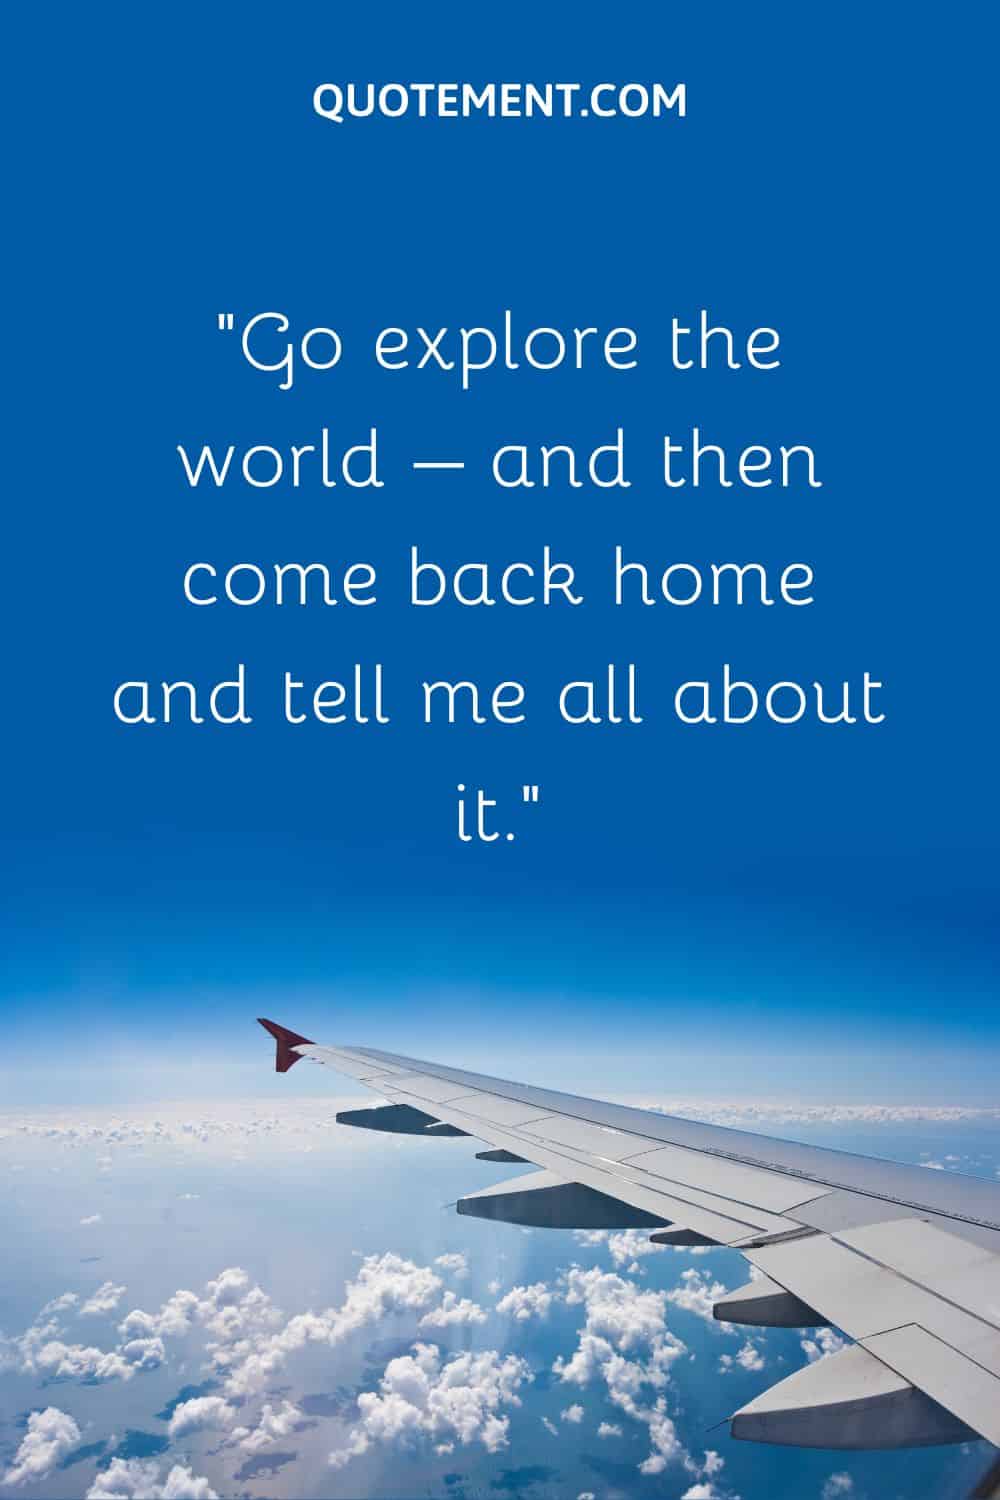 Go explore the world